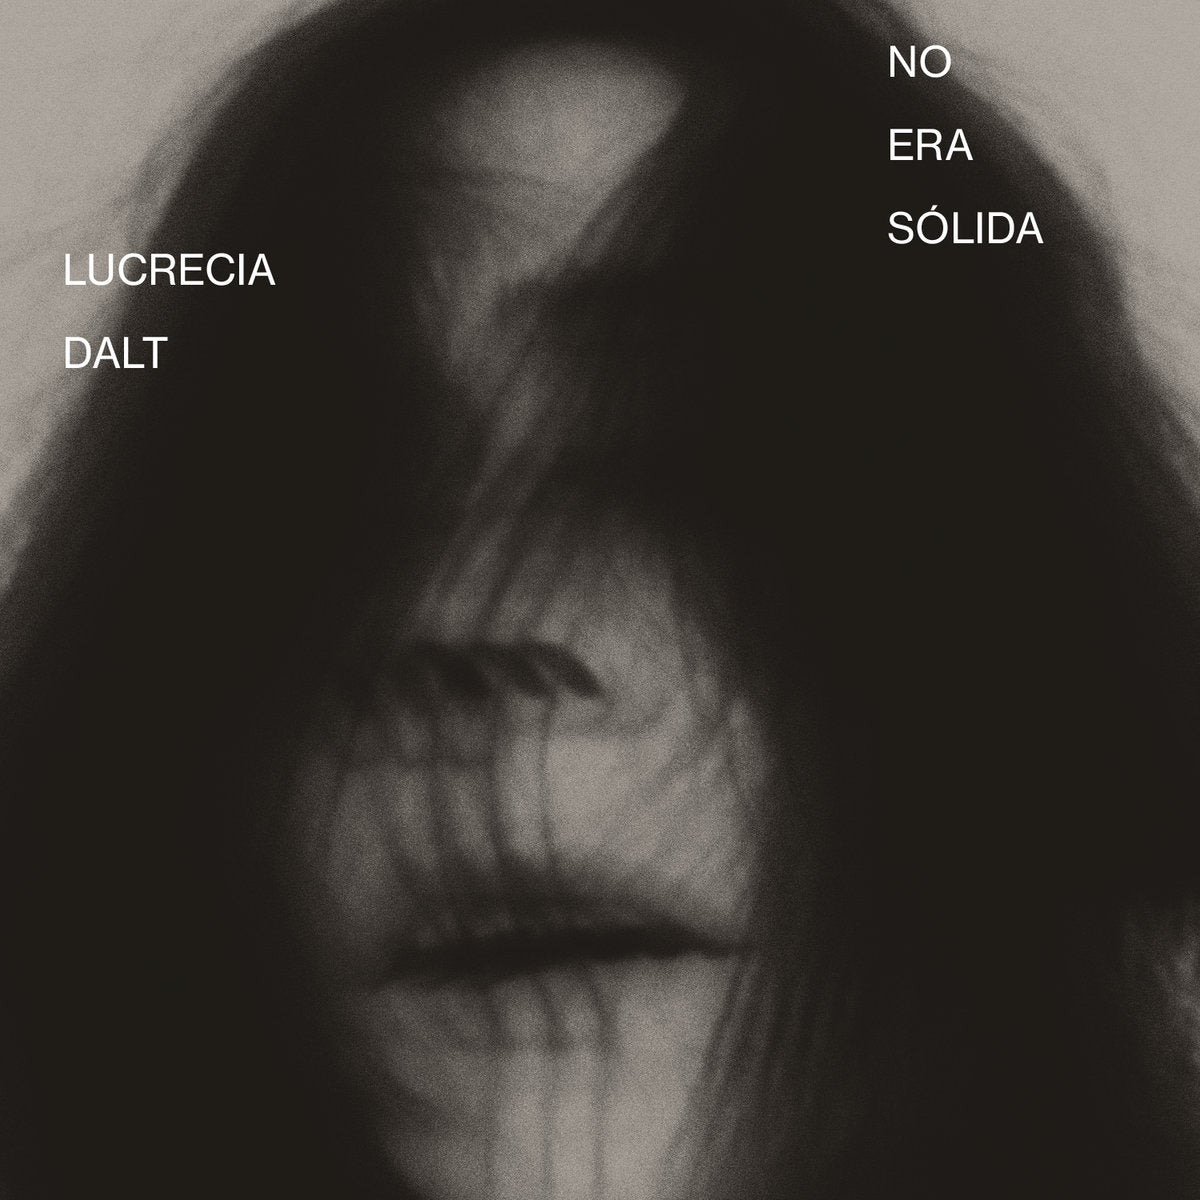 LUCRECIA DALT - NO ERA SÓLIDA Vinyl LP